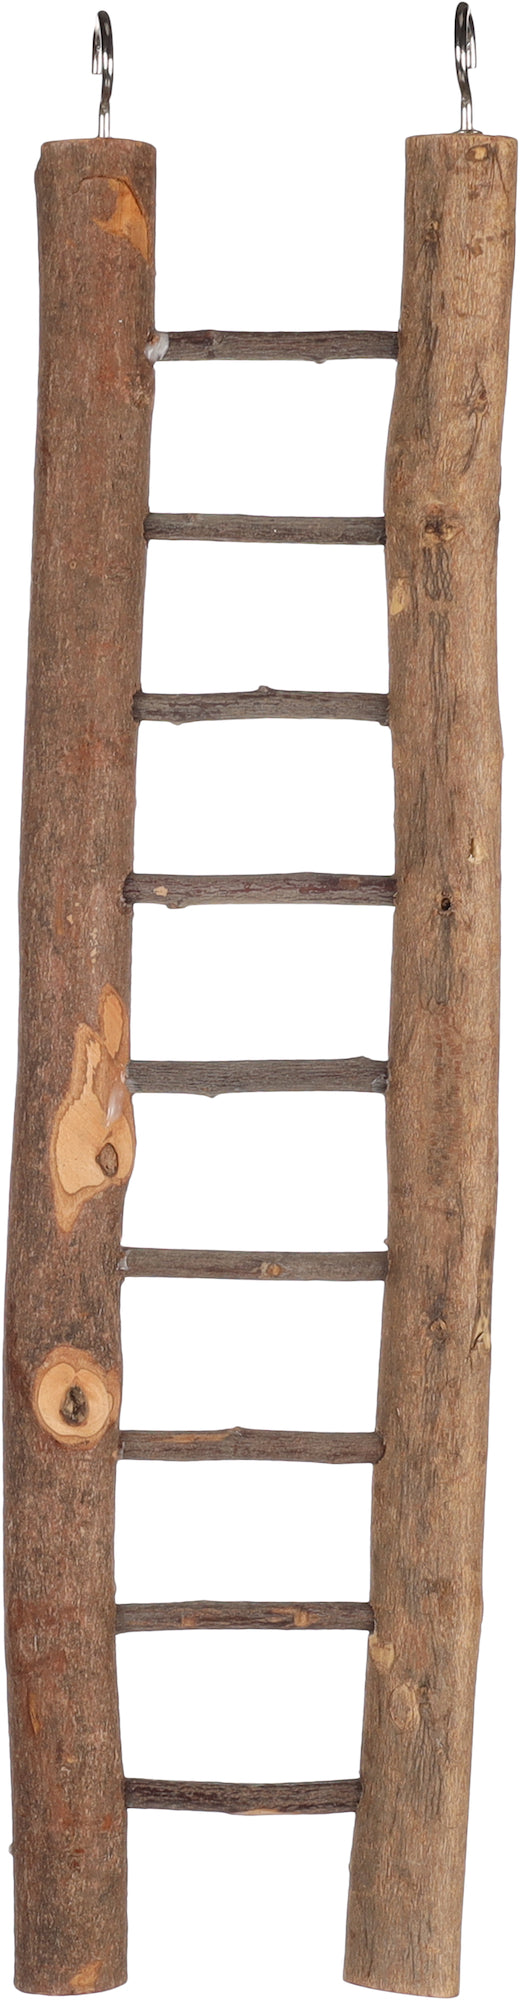 Vogelspeelgoed Ladder Scara - Huisdierplezier